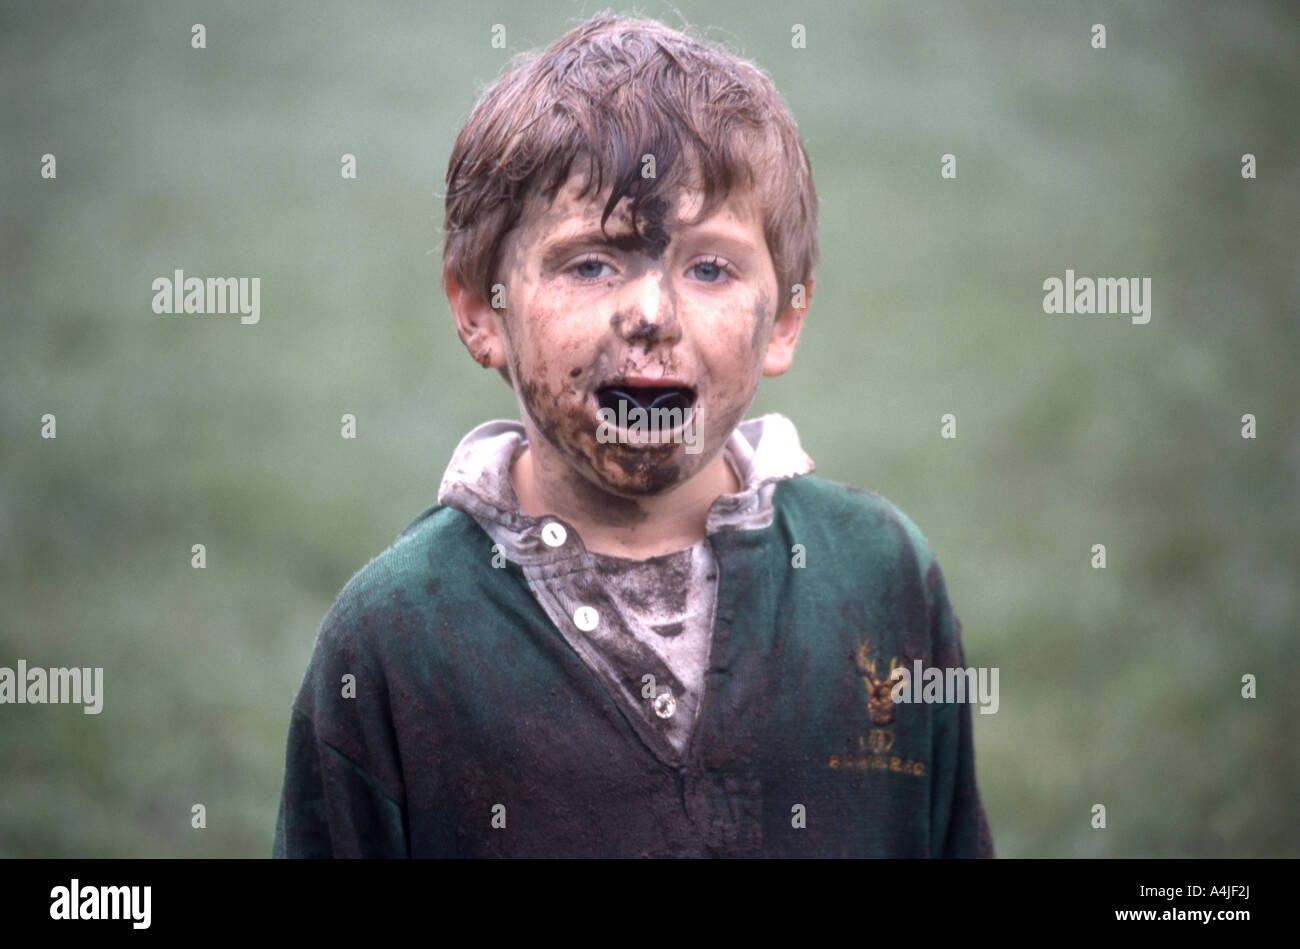 Junger Rugby-Spieler mit schlammigem Gesicht und Mundschutz, Berkshire, England, Vereinigtes Königreich Stockfoto